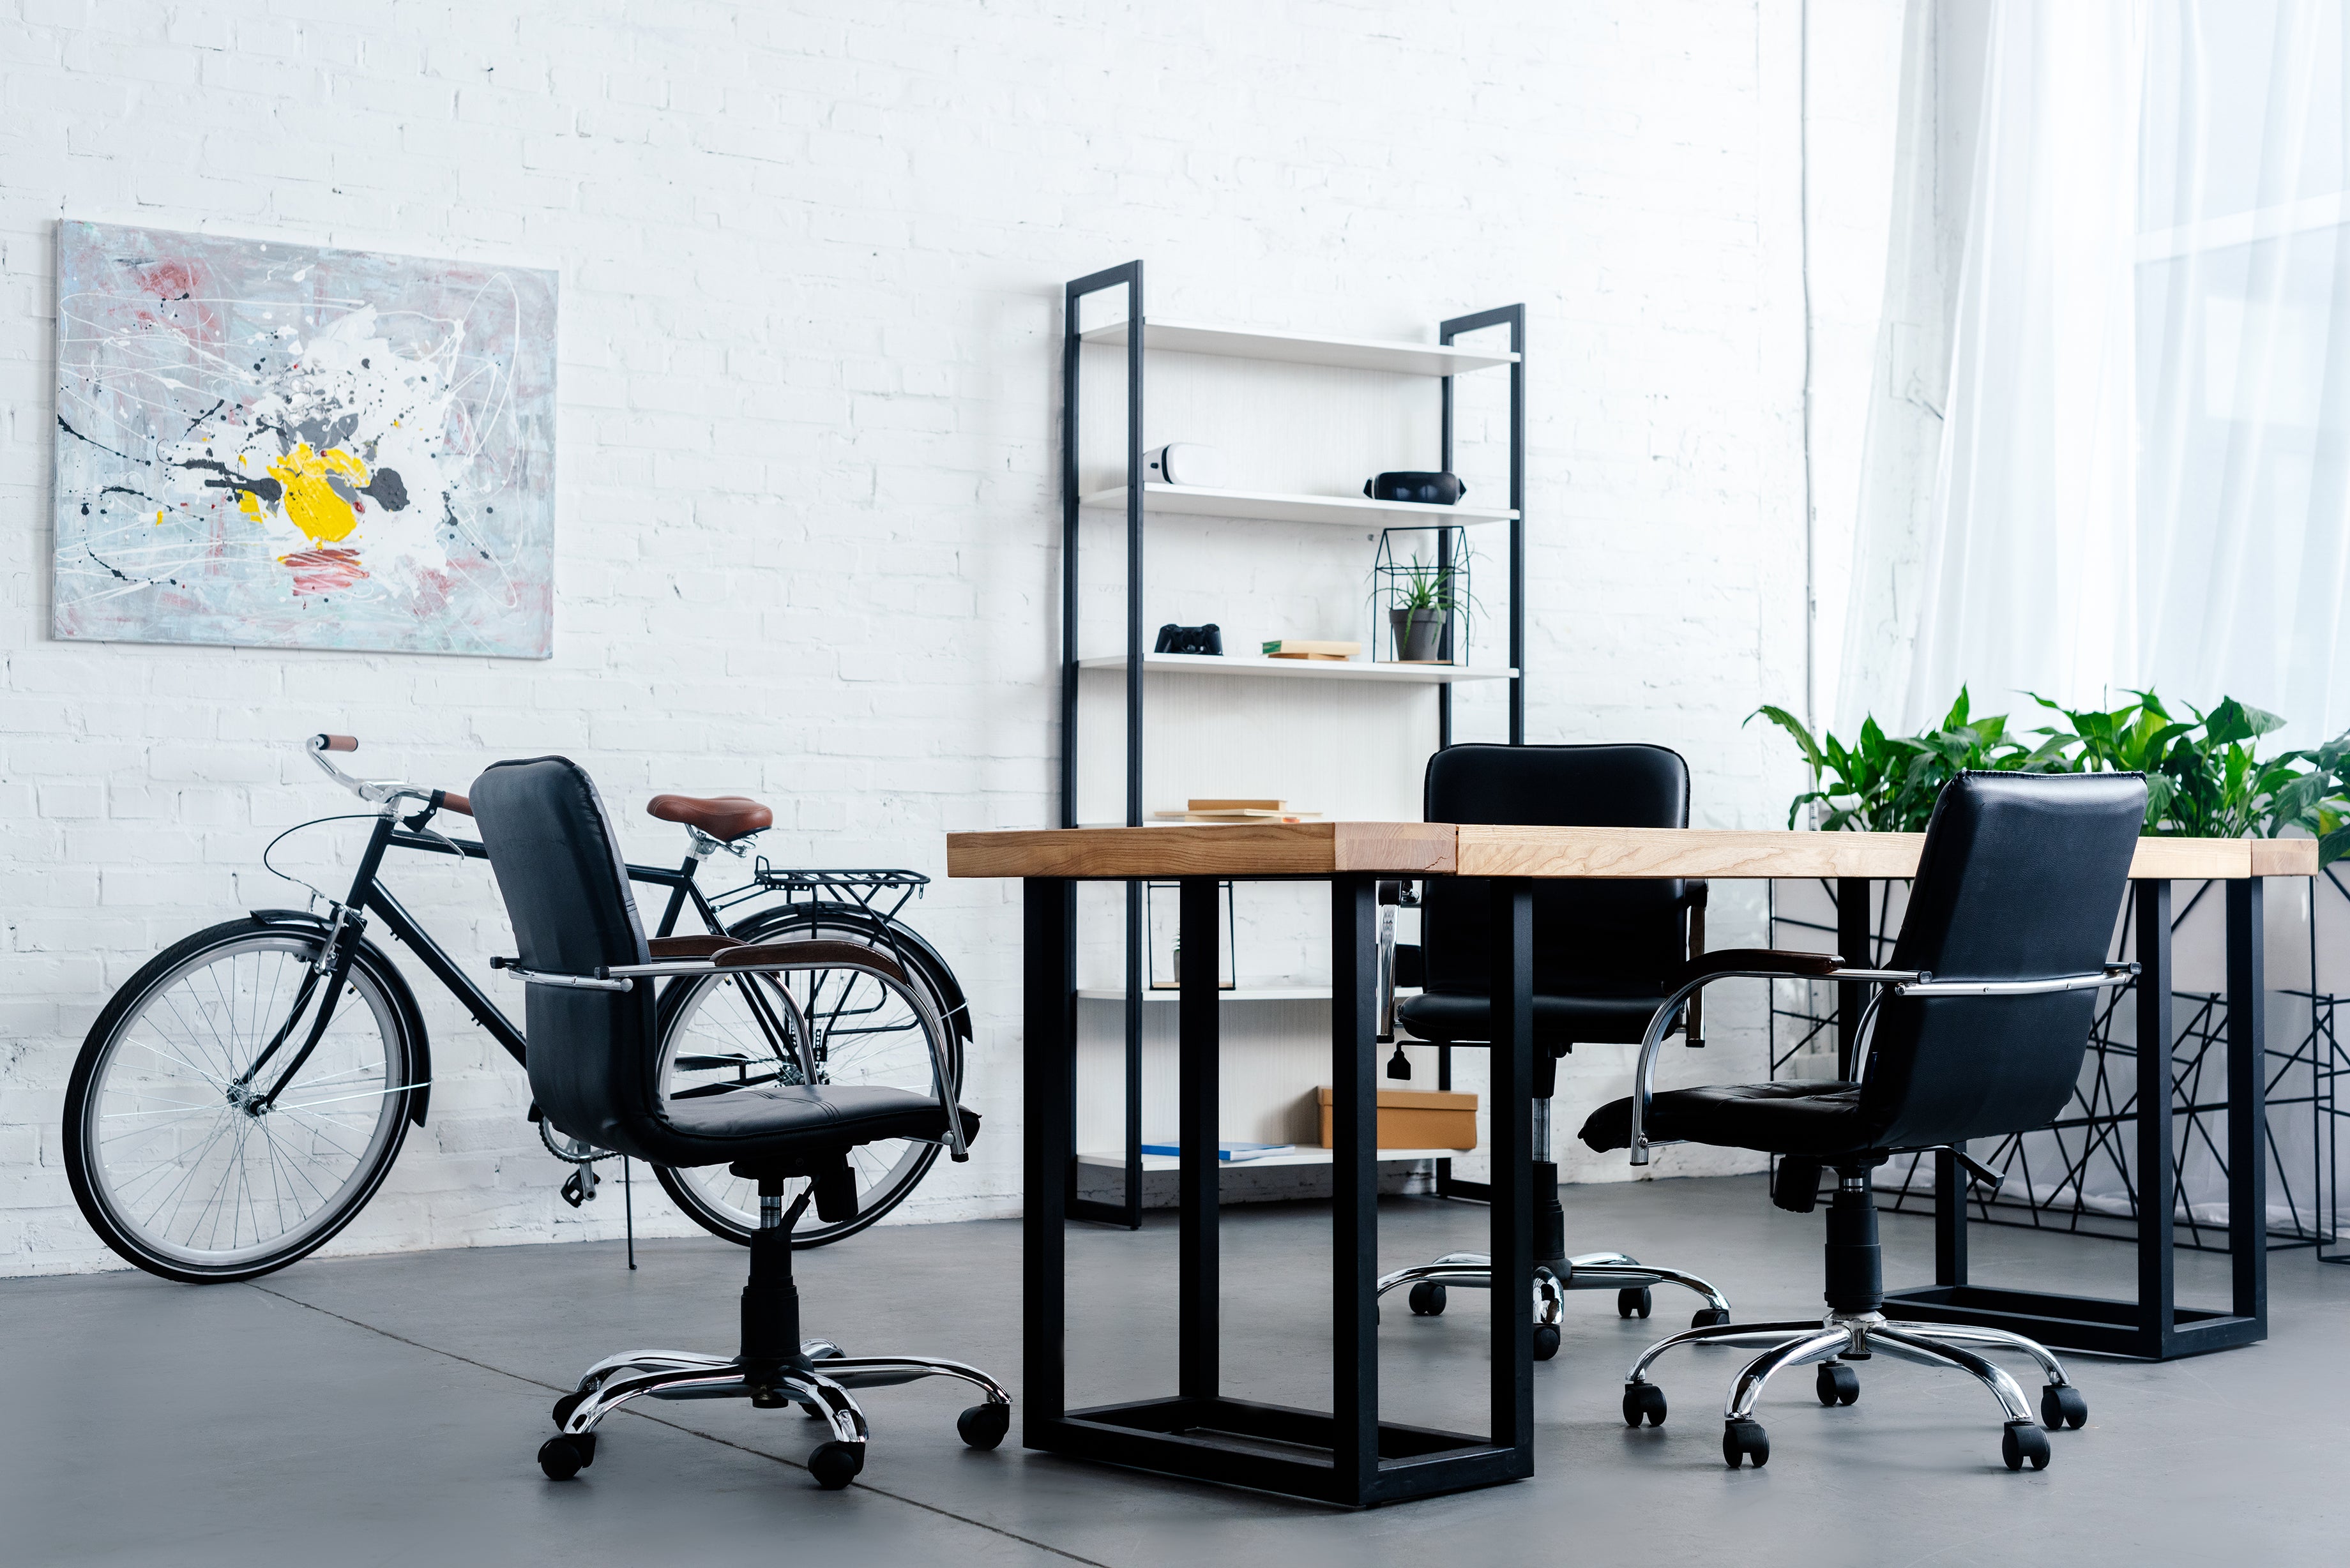 ¿Cómo decorar un escritorio de trabajo? 15 ideas geniales